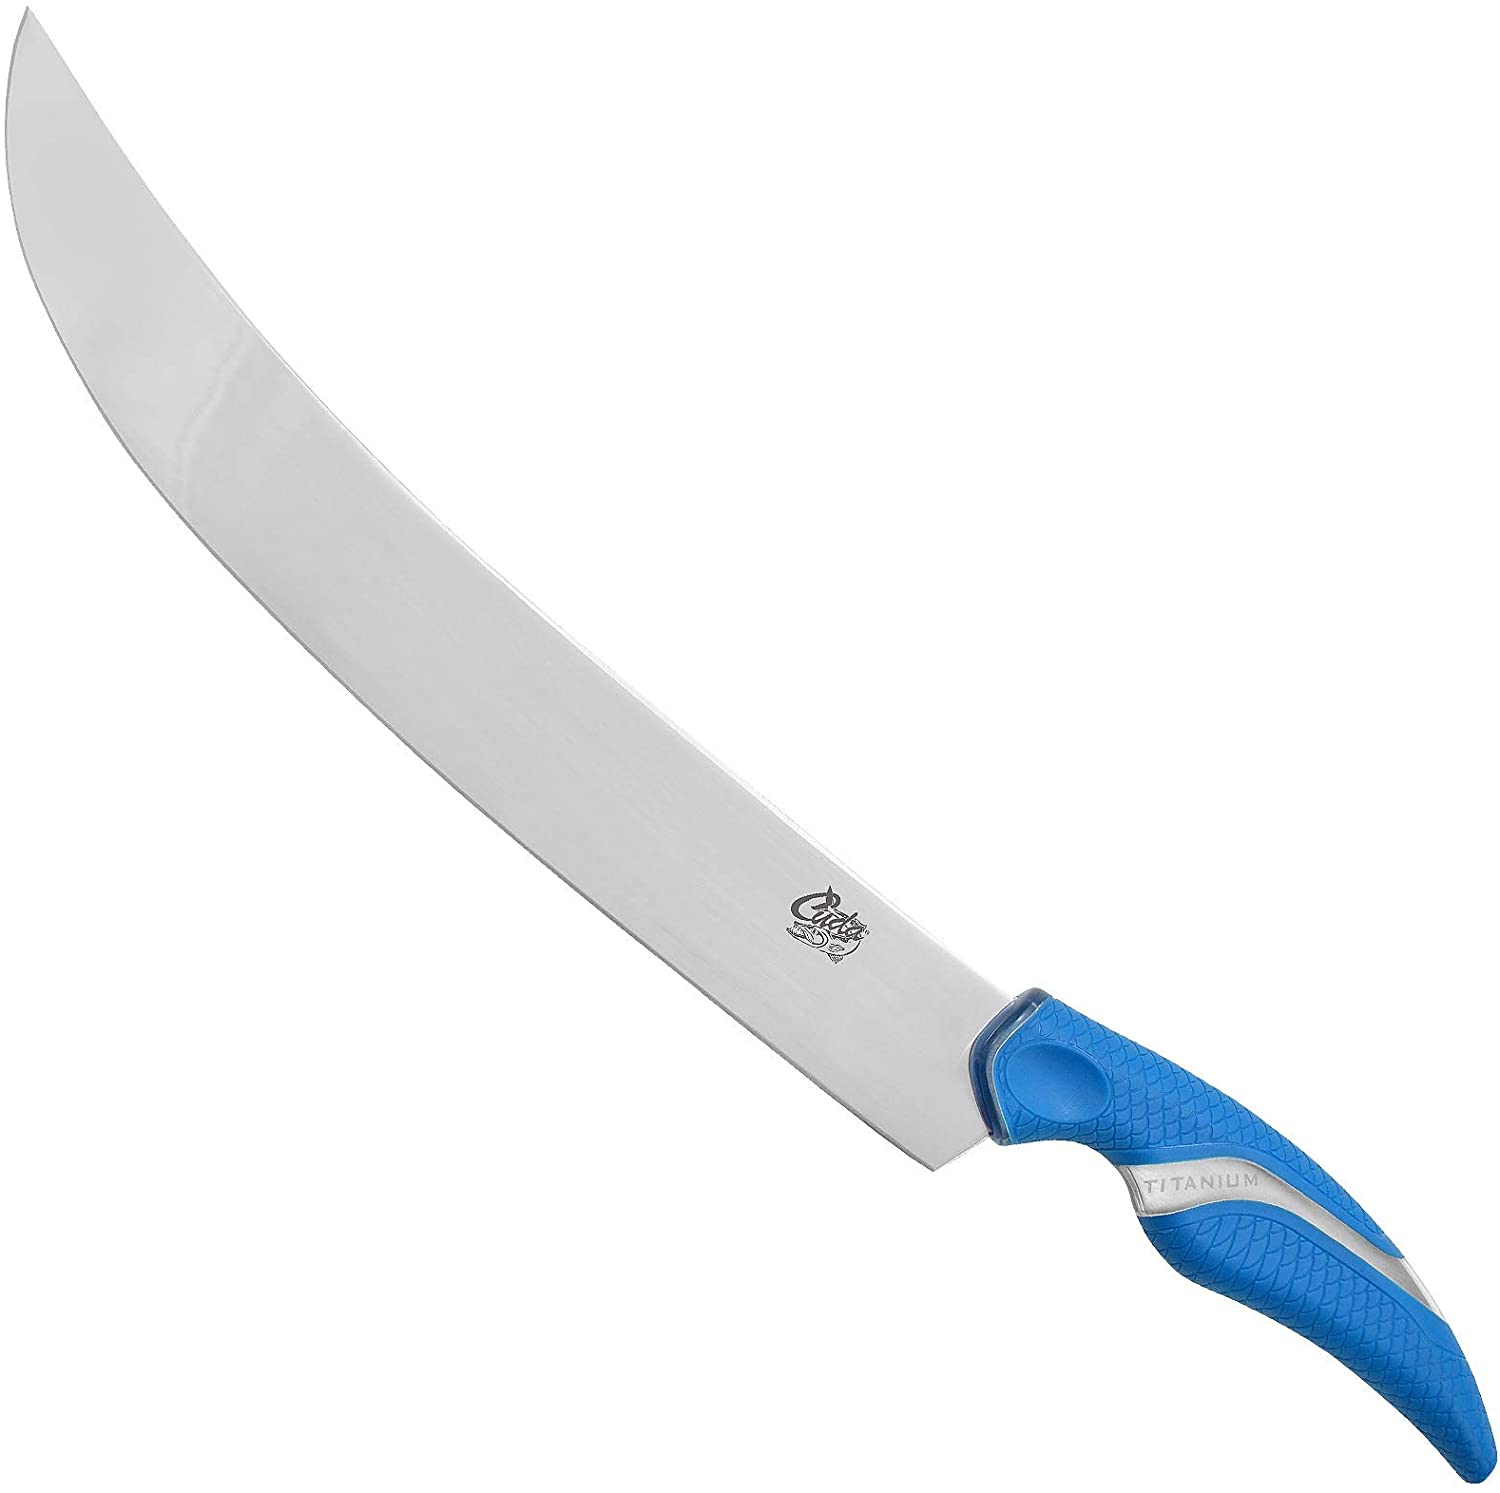 Camillus Cm18229 Cuda Titanium Curved Knife